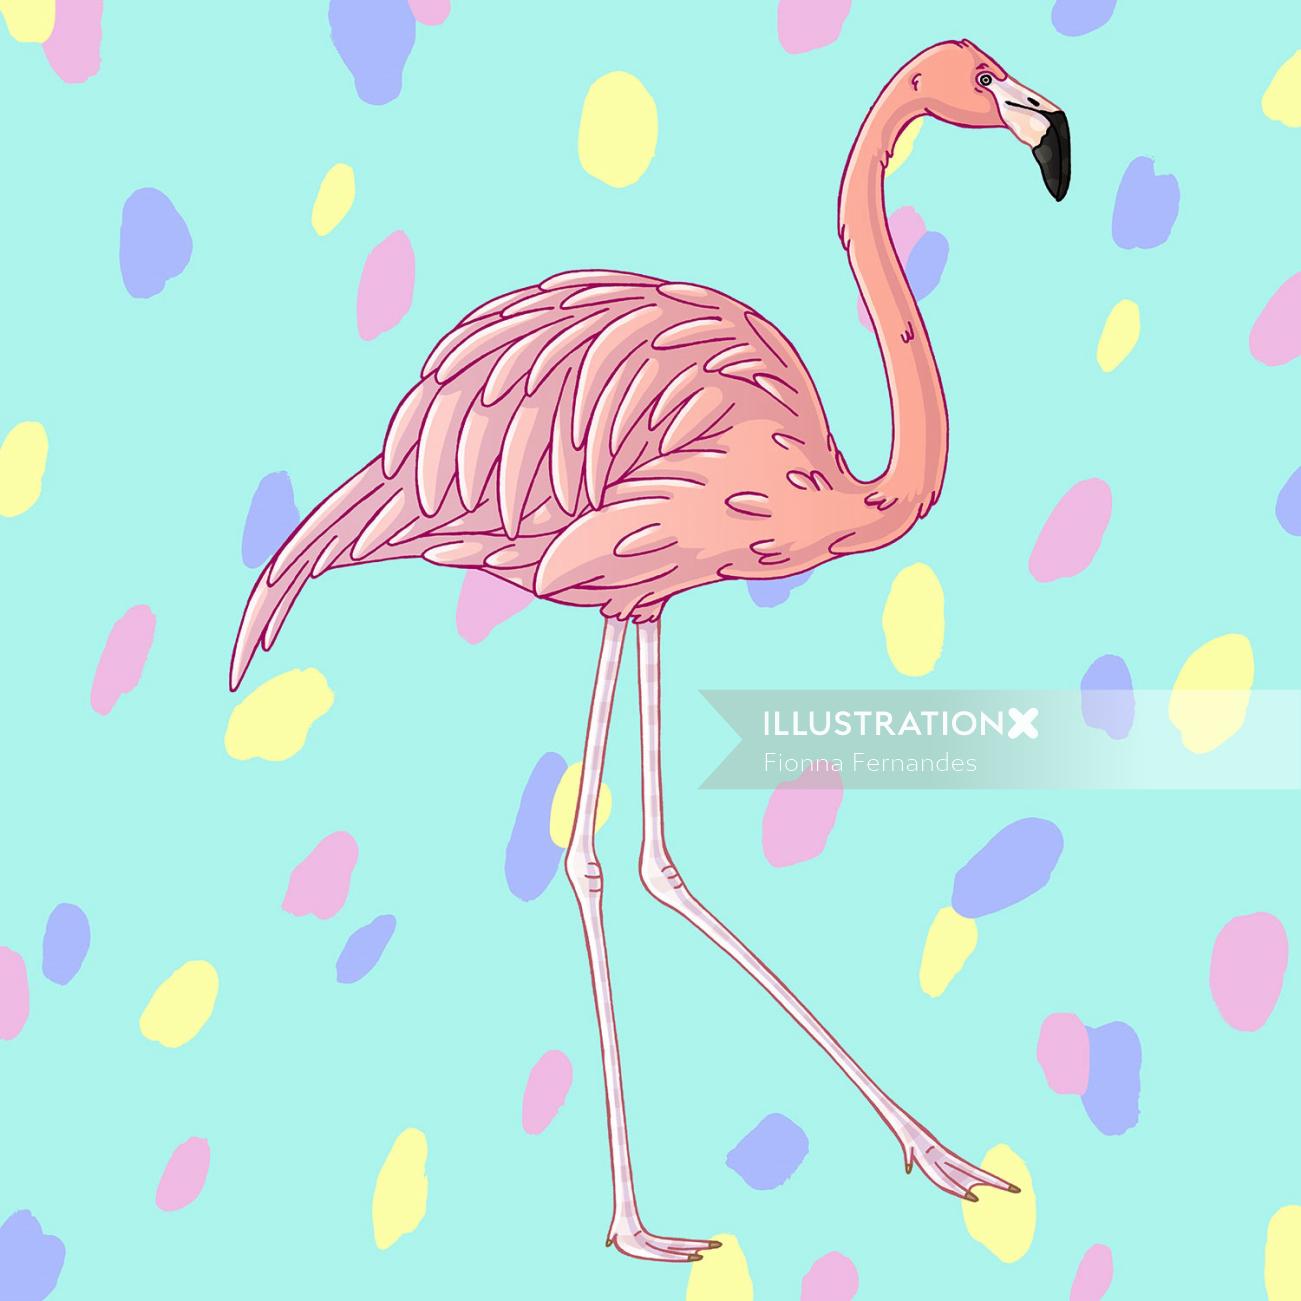 Arte divertida e vibrante de um flamingo